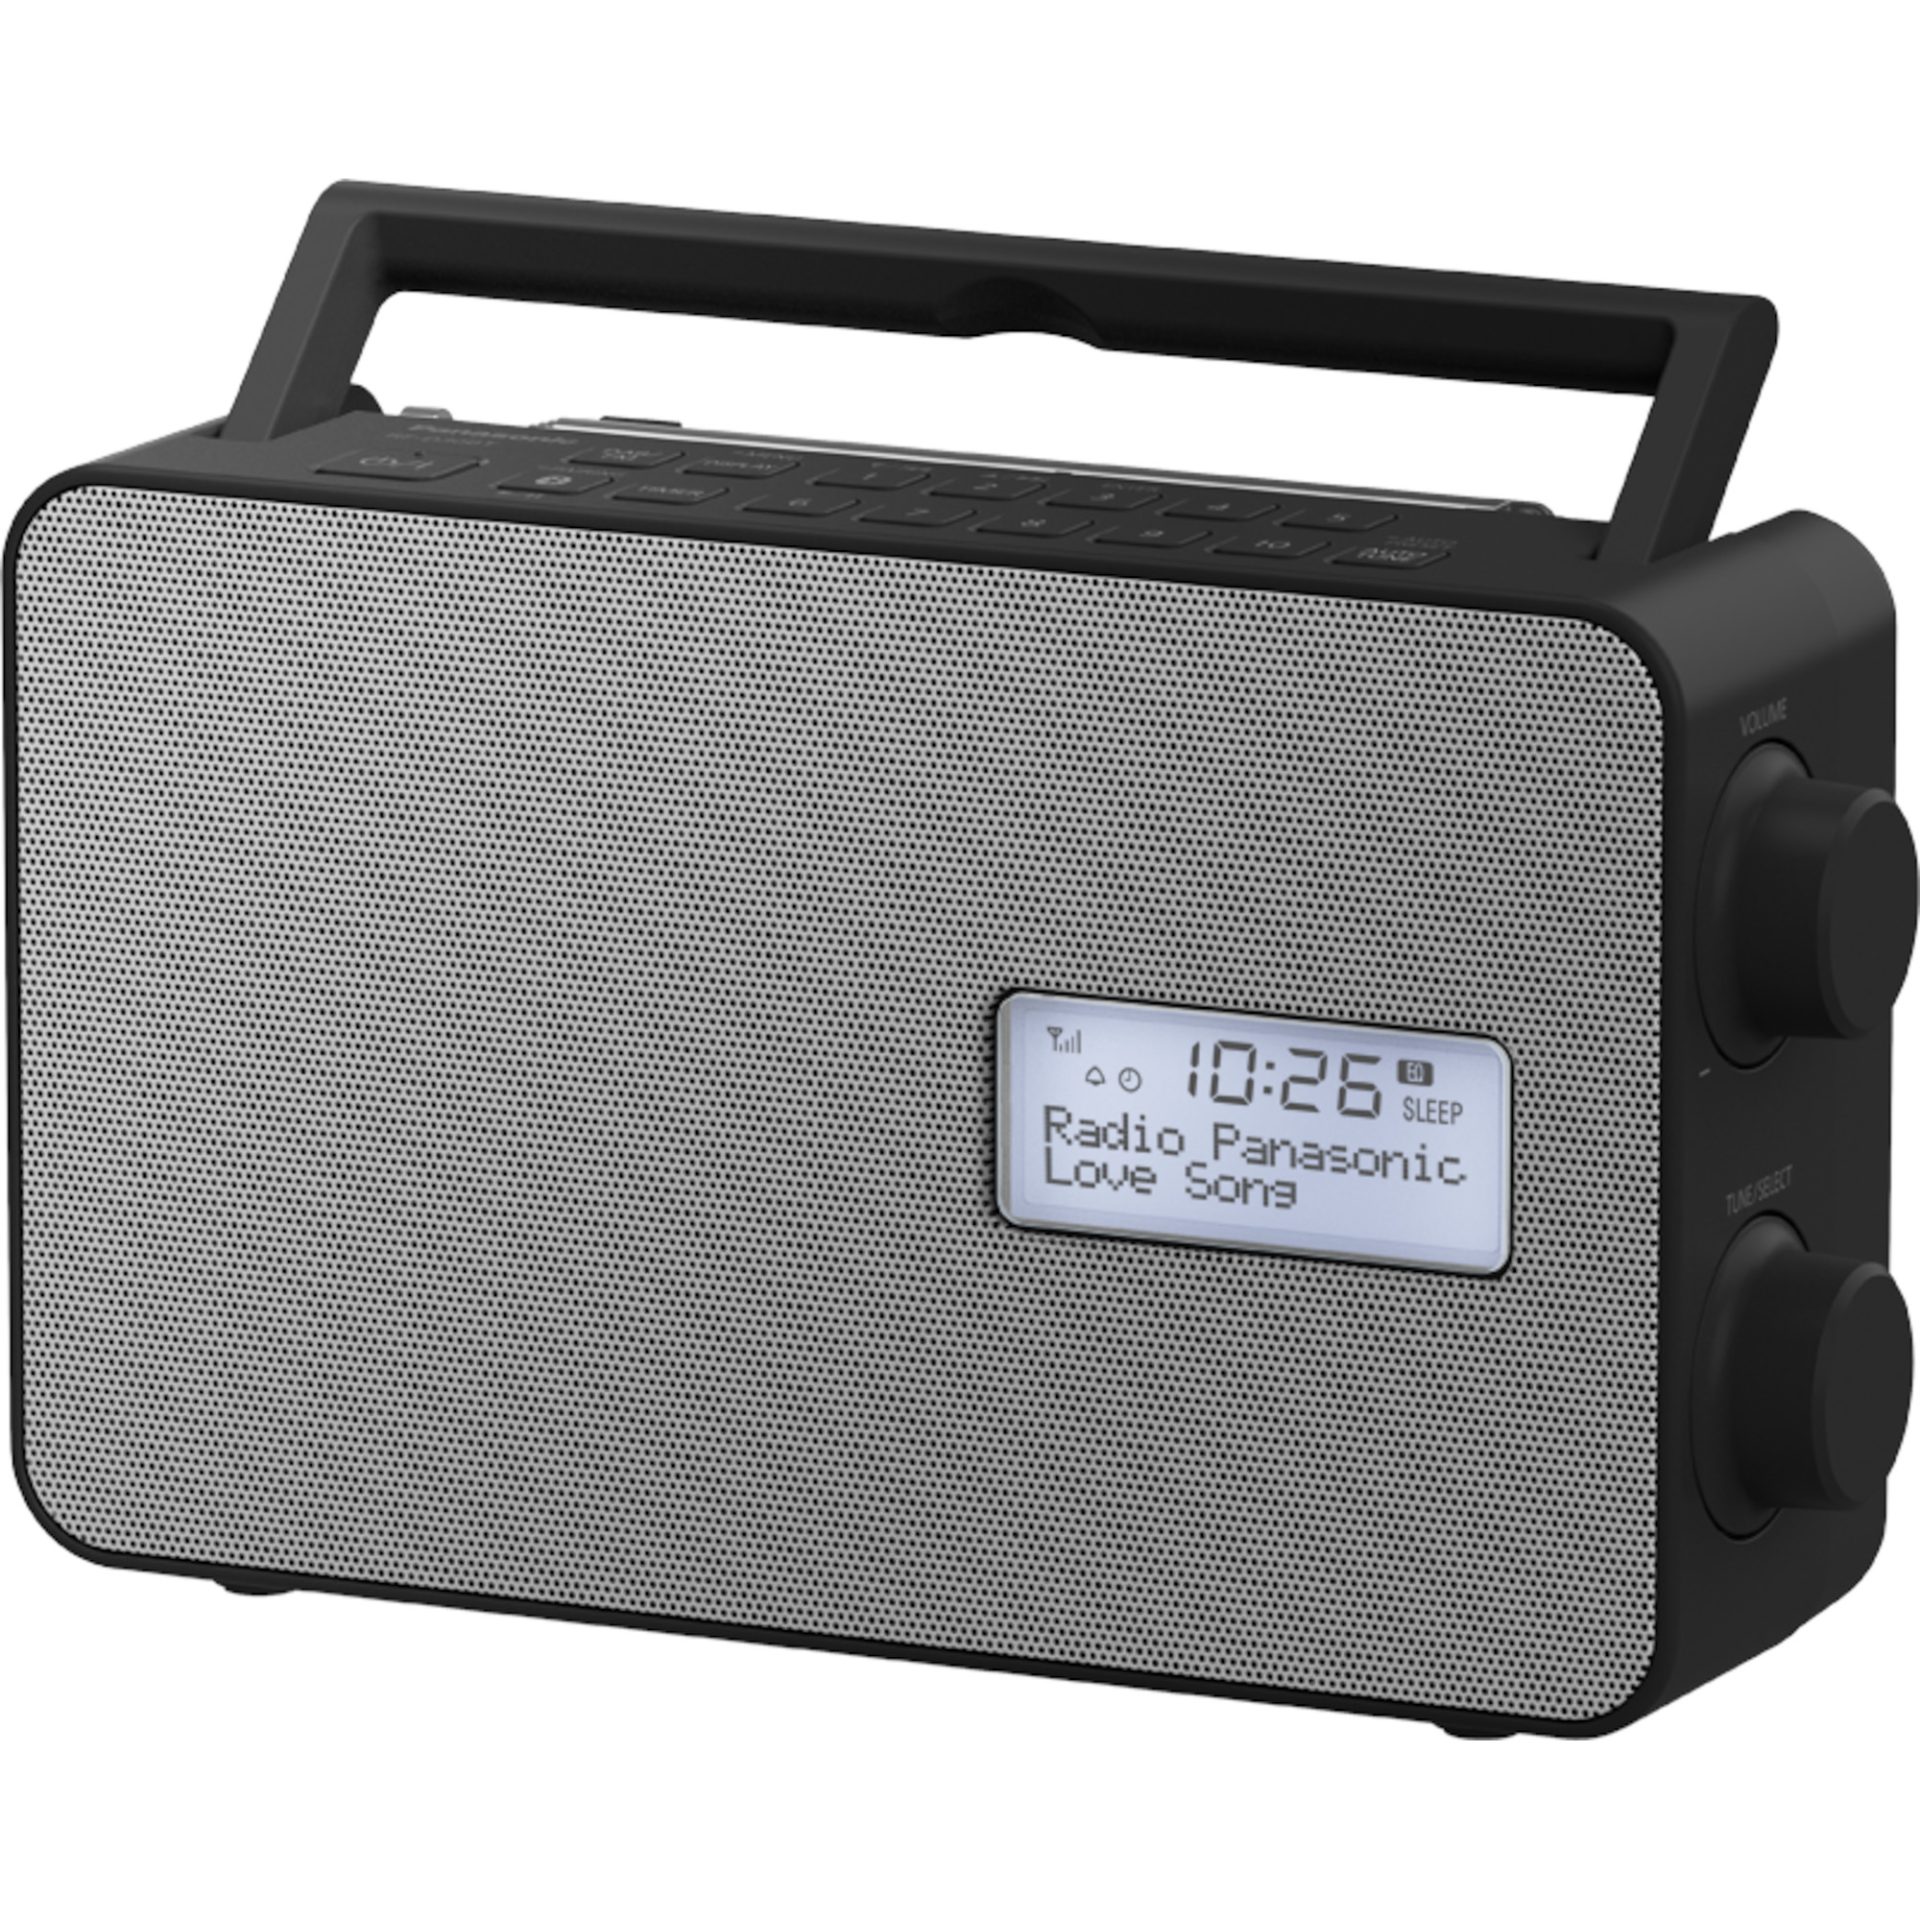 Panasonic RF-D30 digitální rádio s Bluetooth (10 programových tlačítek, odolnost proti stříkající vodě IPX4, časovač, USB nabíjení, 10 cm reproduktor)